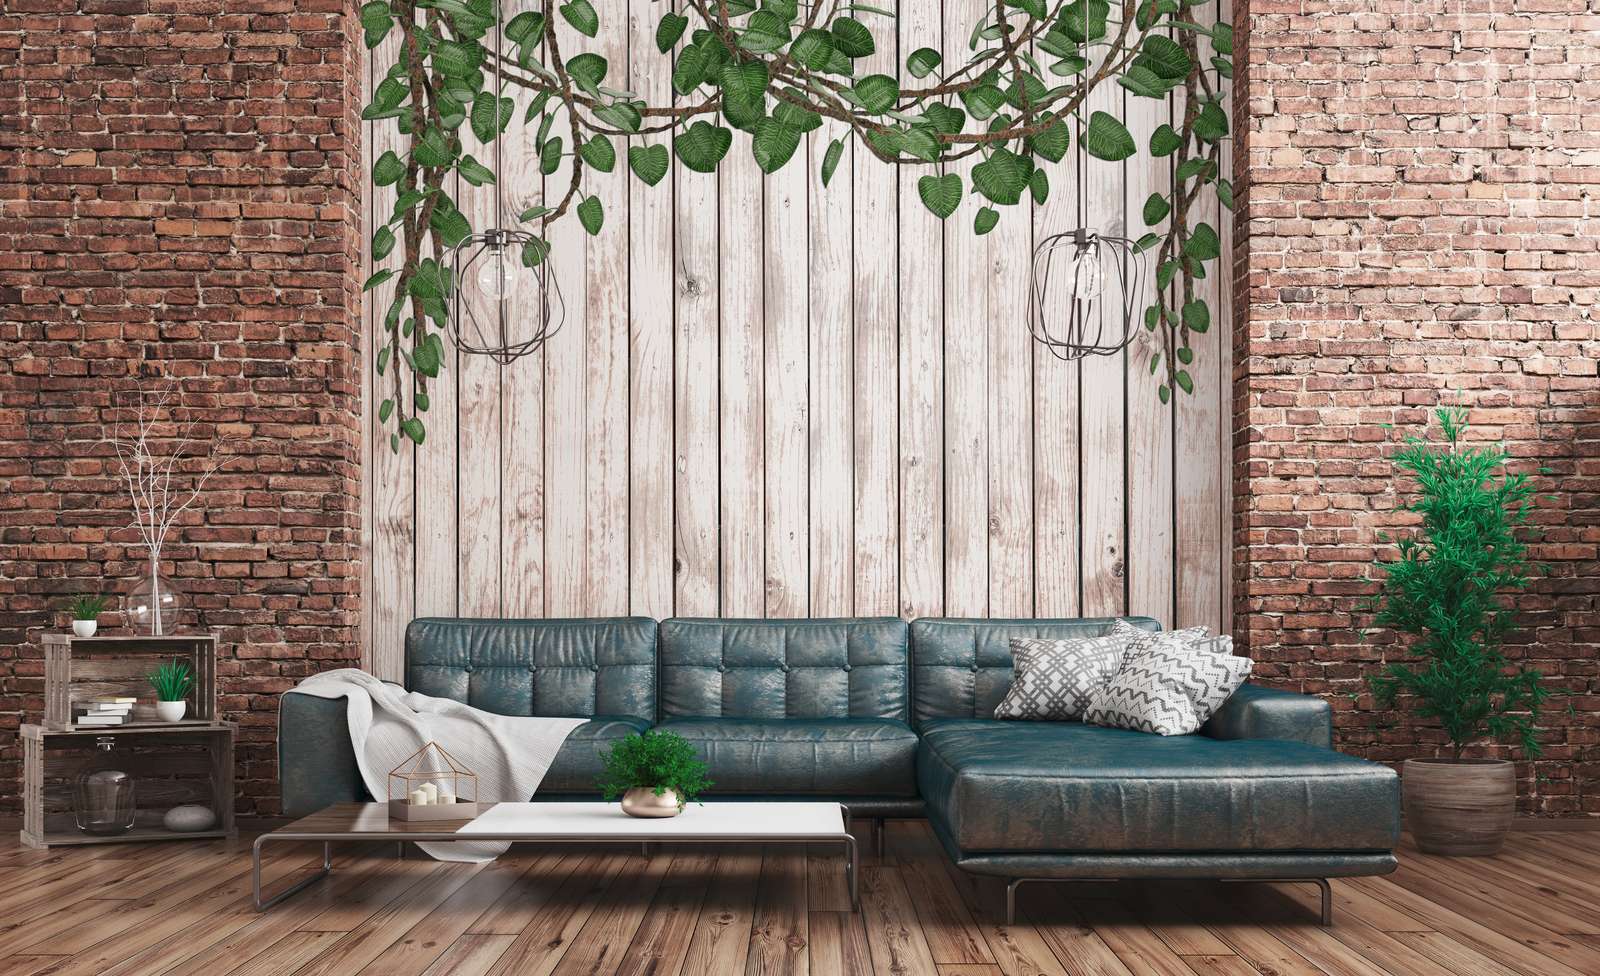             Fototapete Holzwand mit herabragenden Blättern naturell – Grün, Beige
        